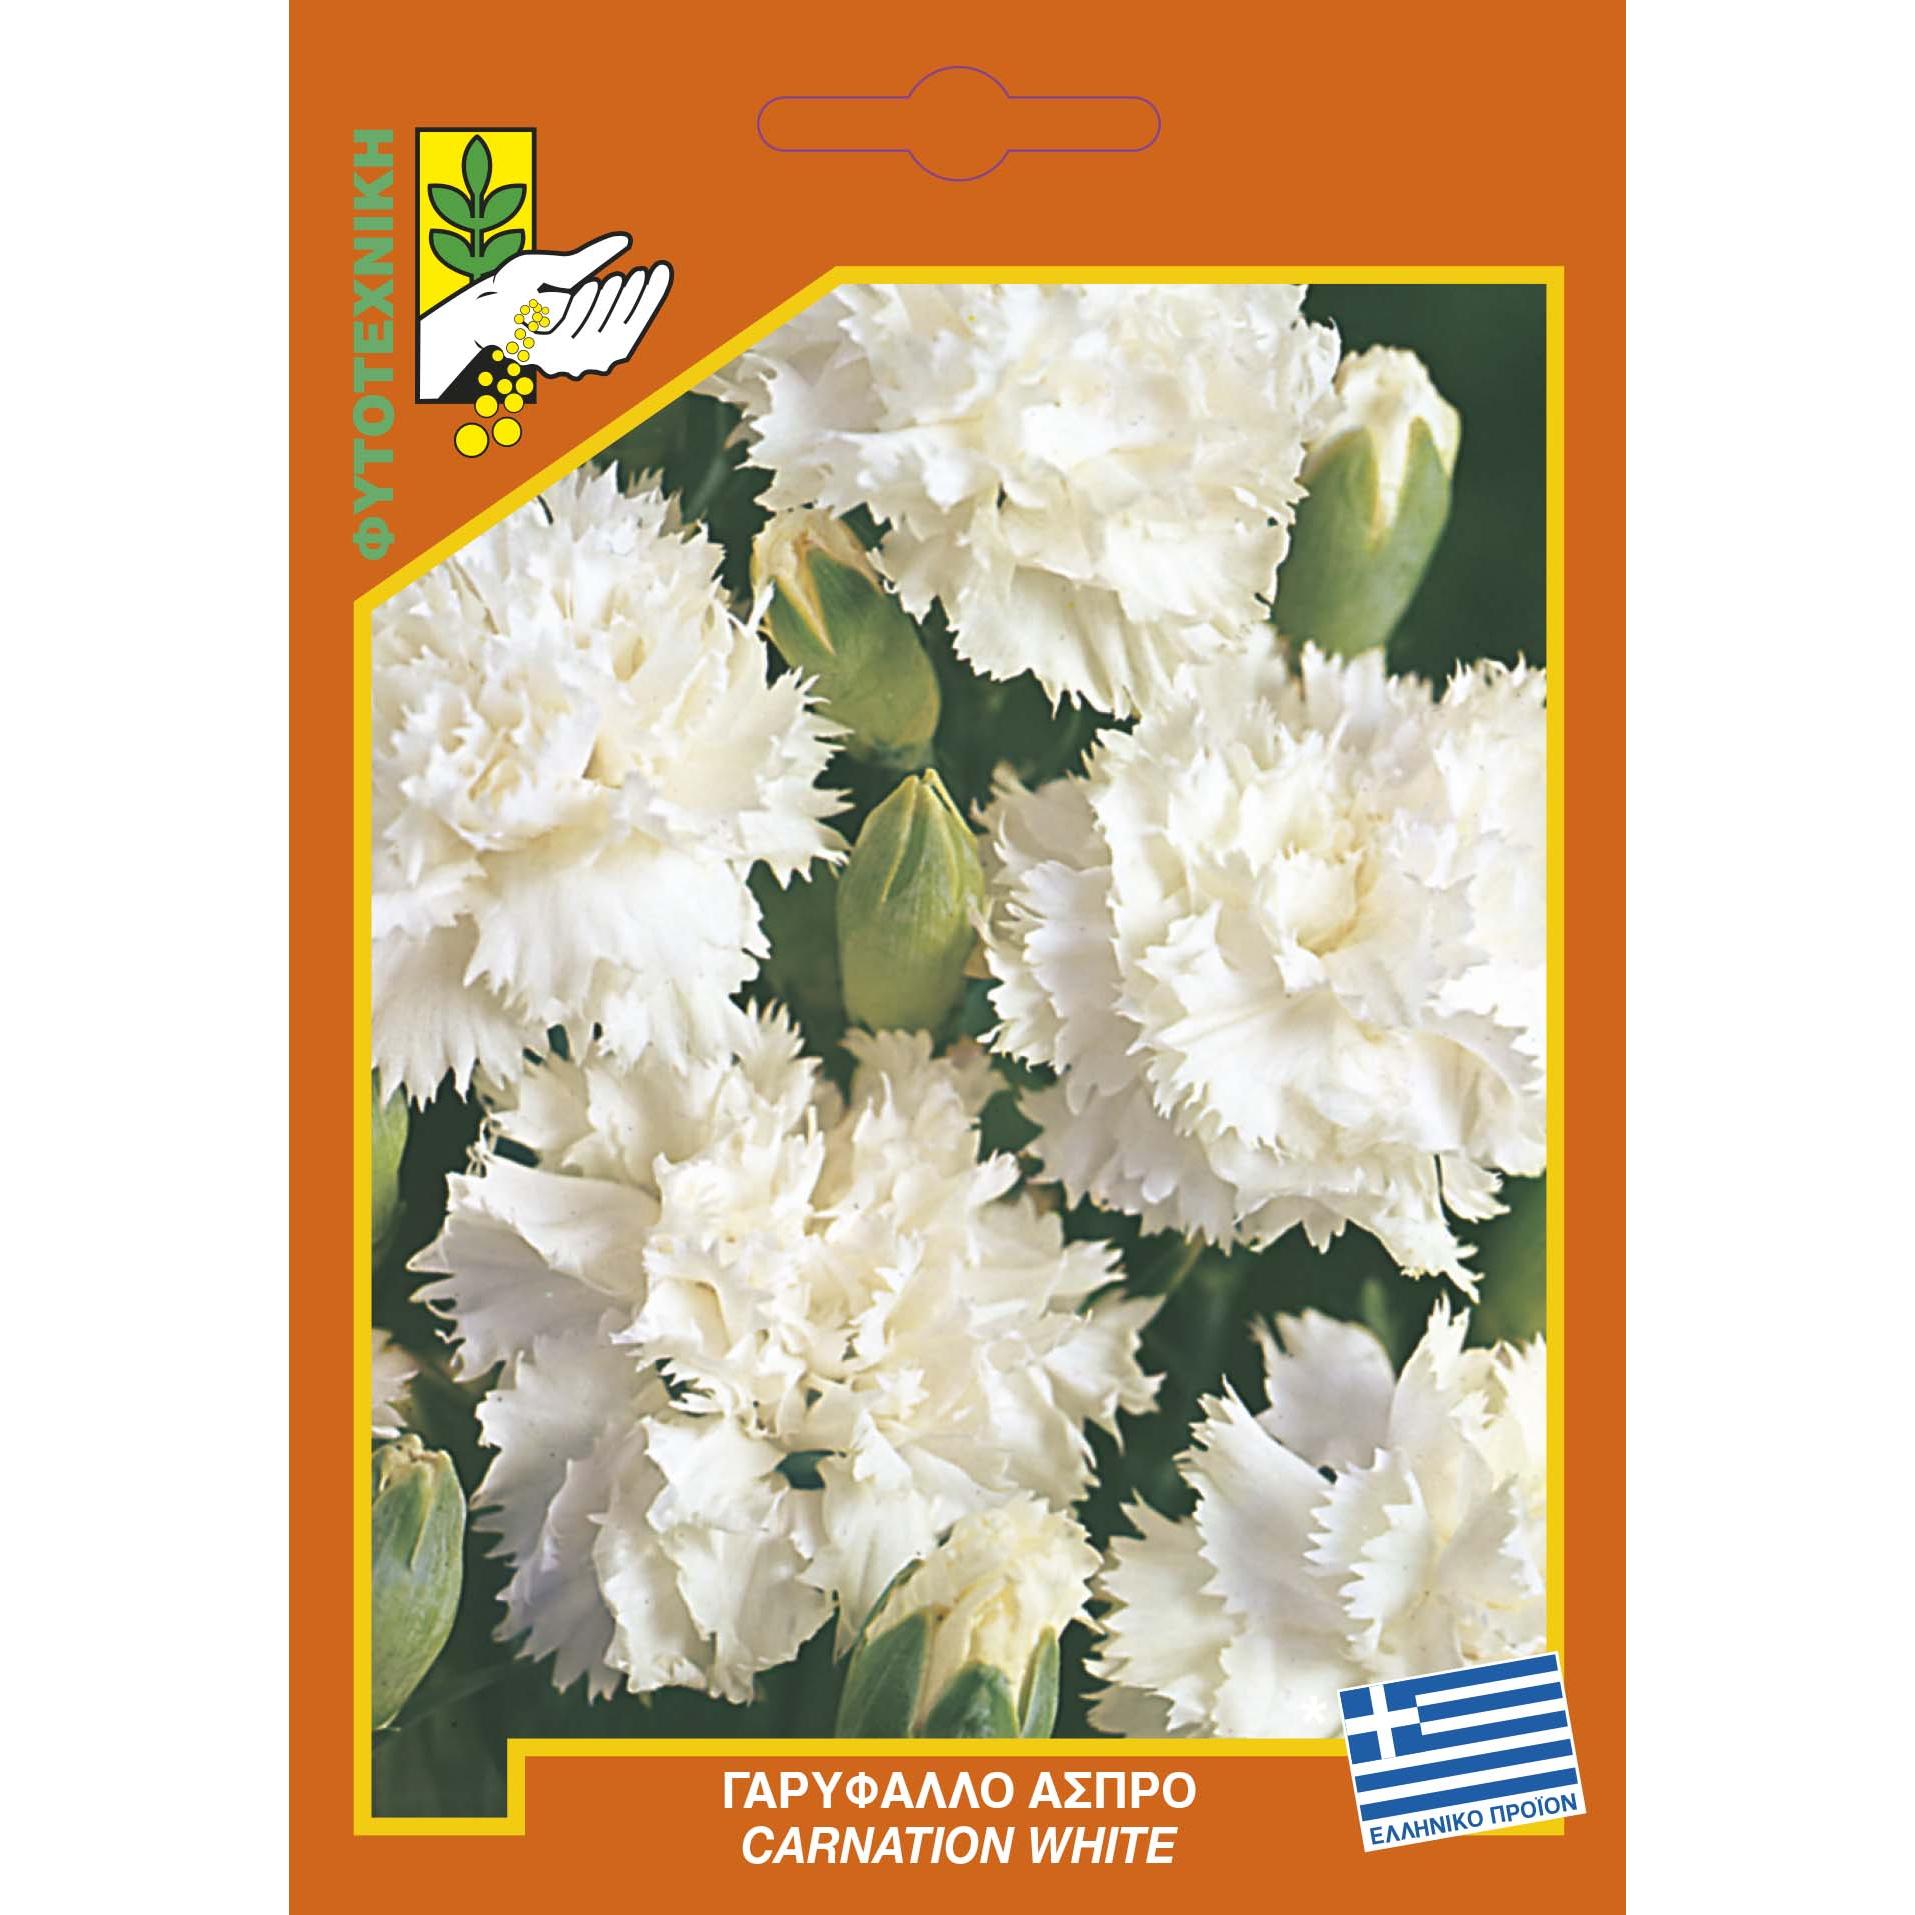 351 Carnation white